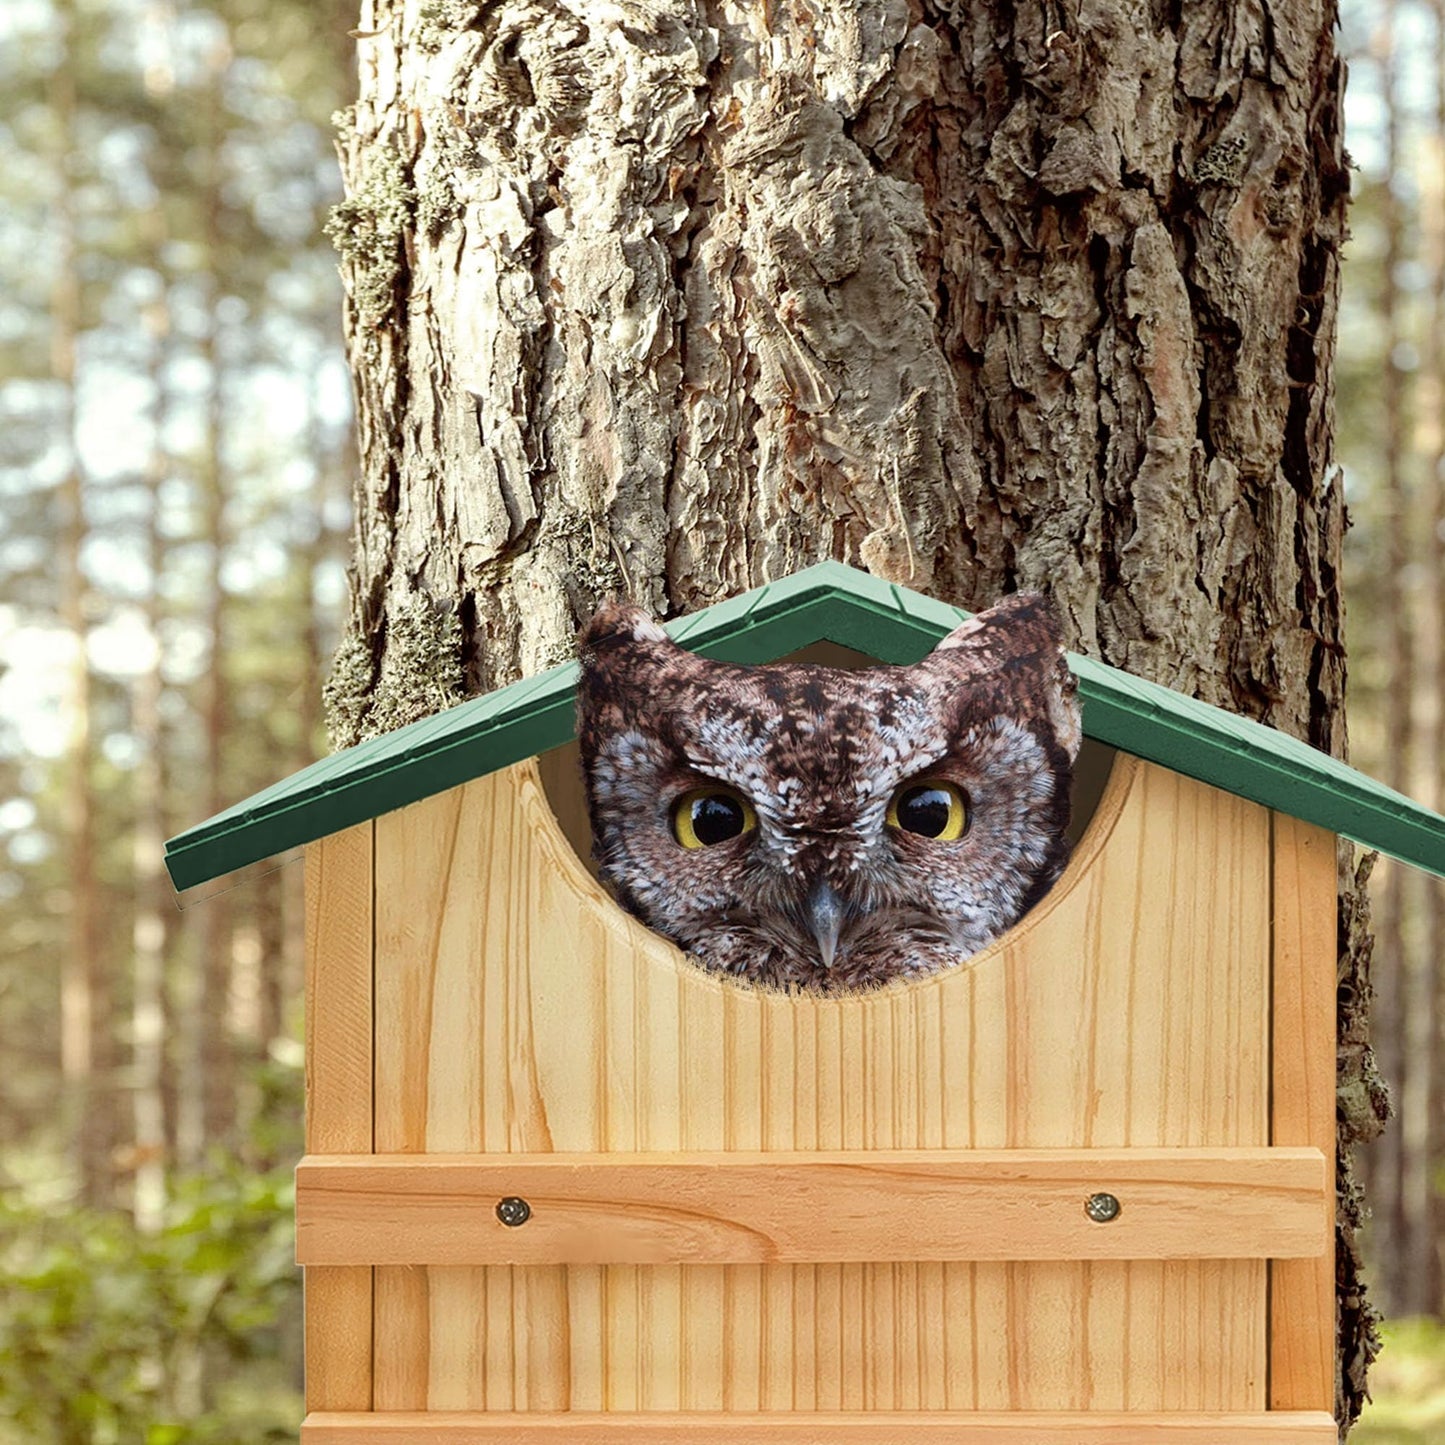 Handmade Cedar Owl House - 14" x 10"